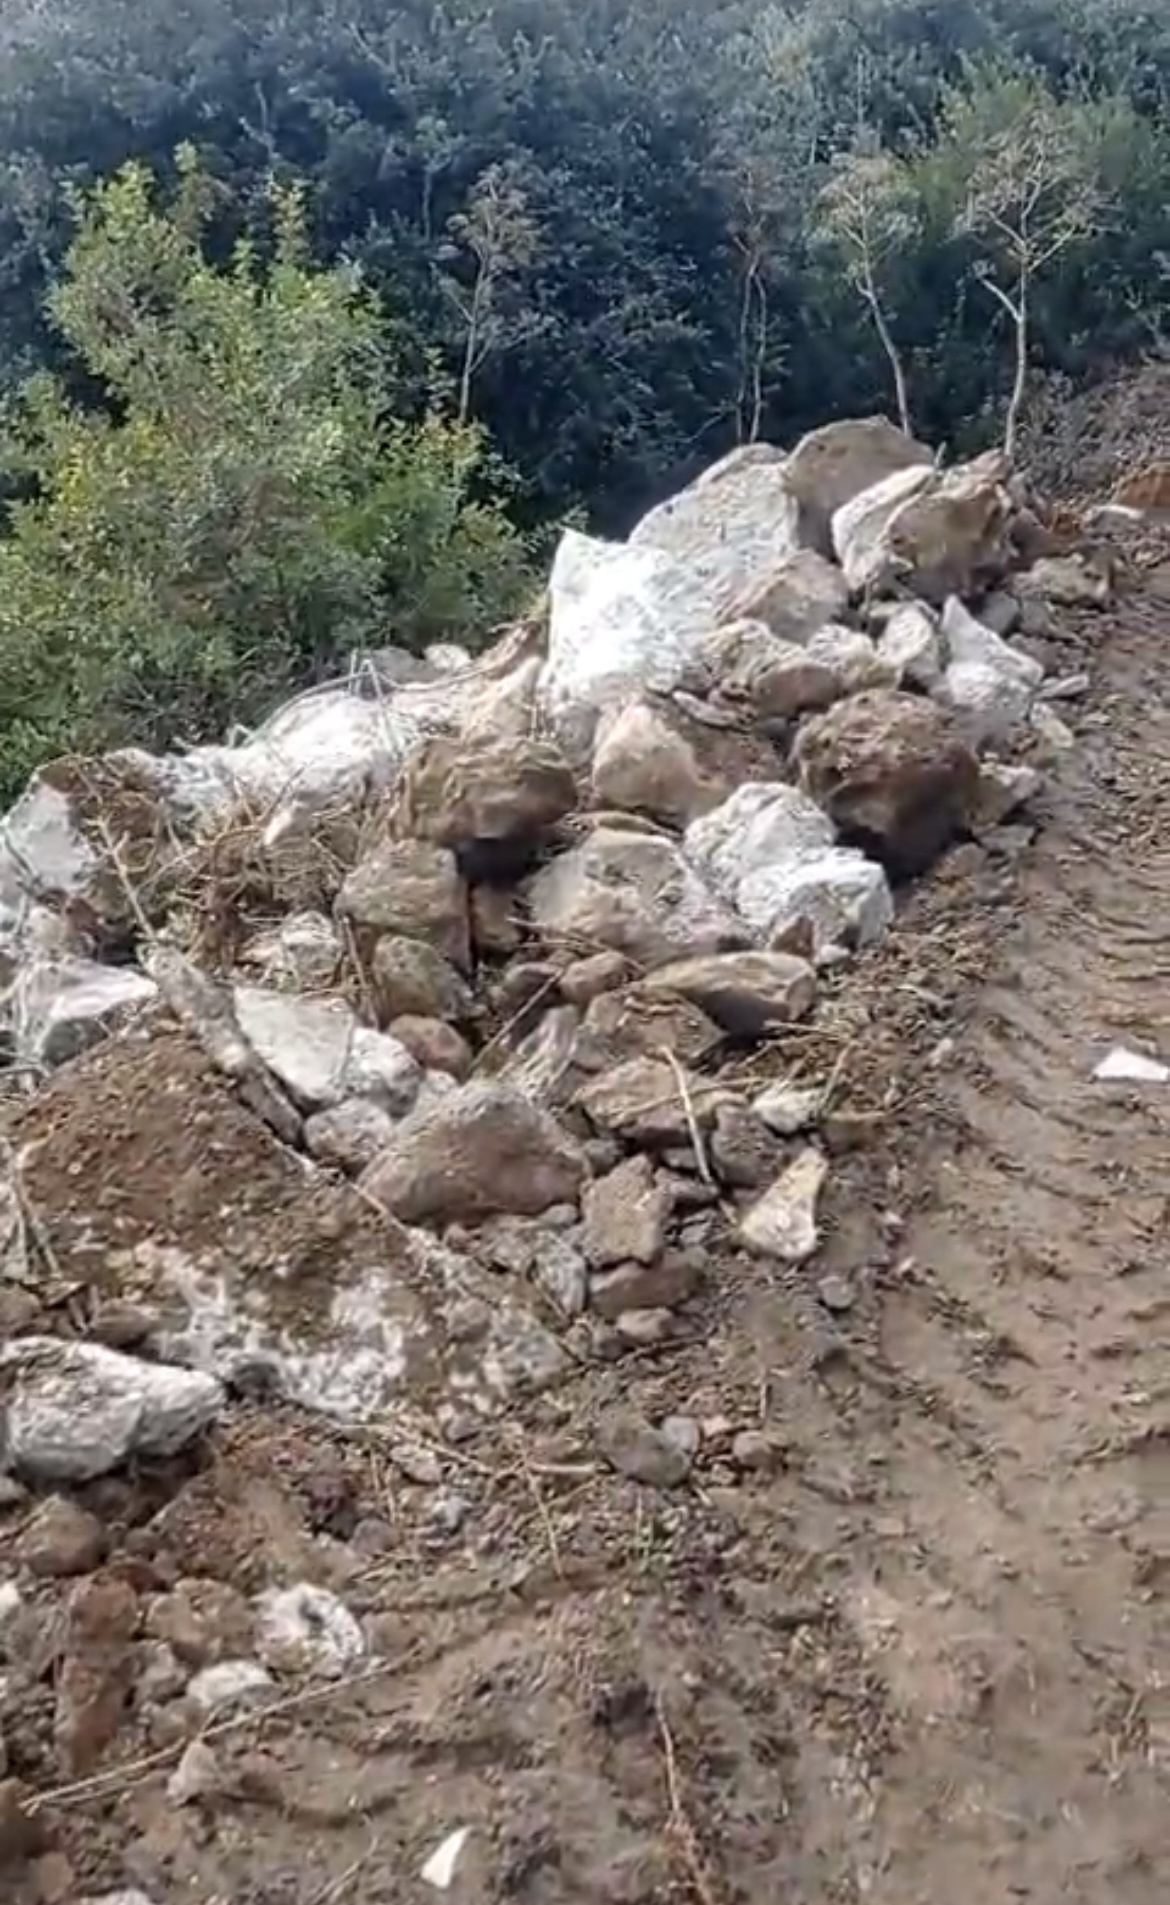 Bitez’de doğa talanı: yeşillik alana kamyonlarla hafriyat döküldü 